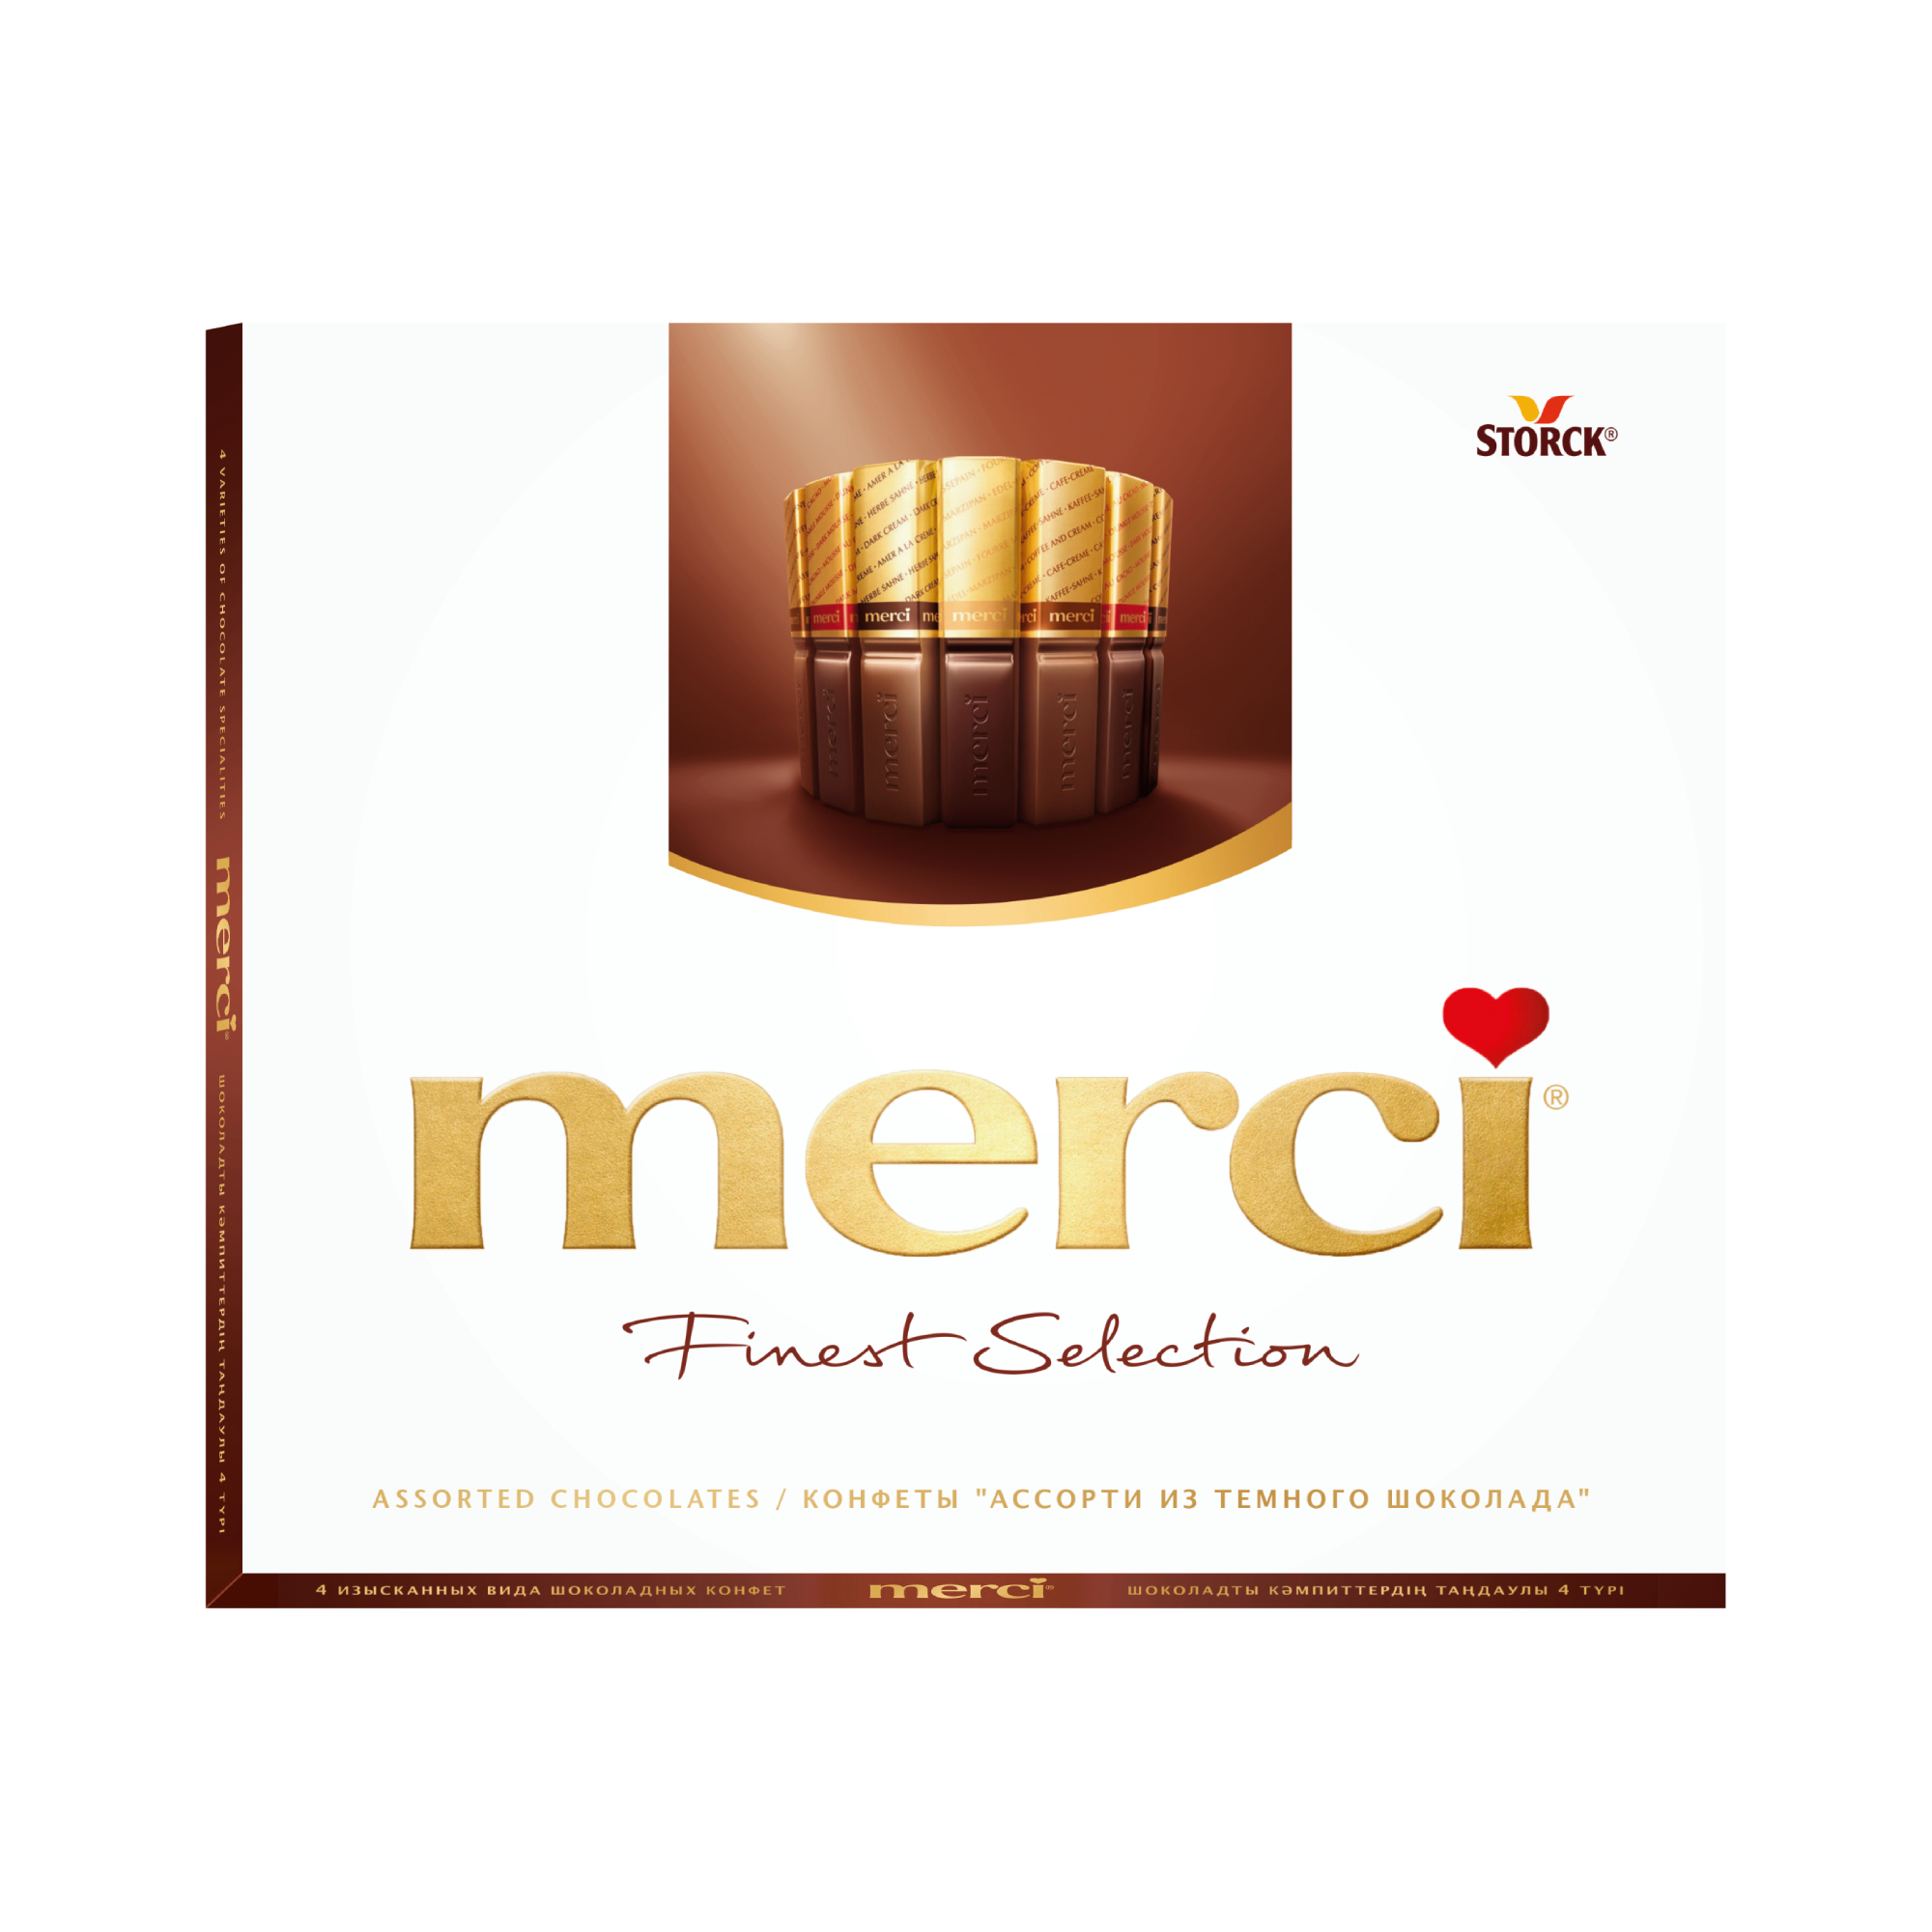 Шоколадный набор Storck Merci Ассорти 4 вида с начинкой из шоколадного мусса 210 г набор свечей столбиков 2 шт 4х6 см шоколадный трюфель